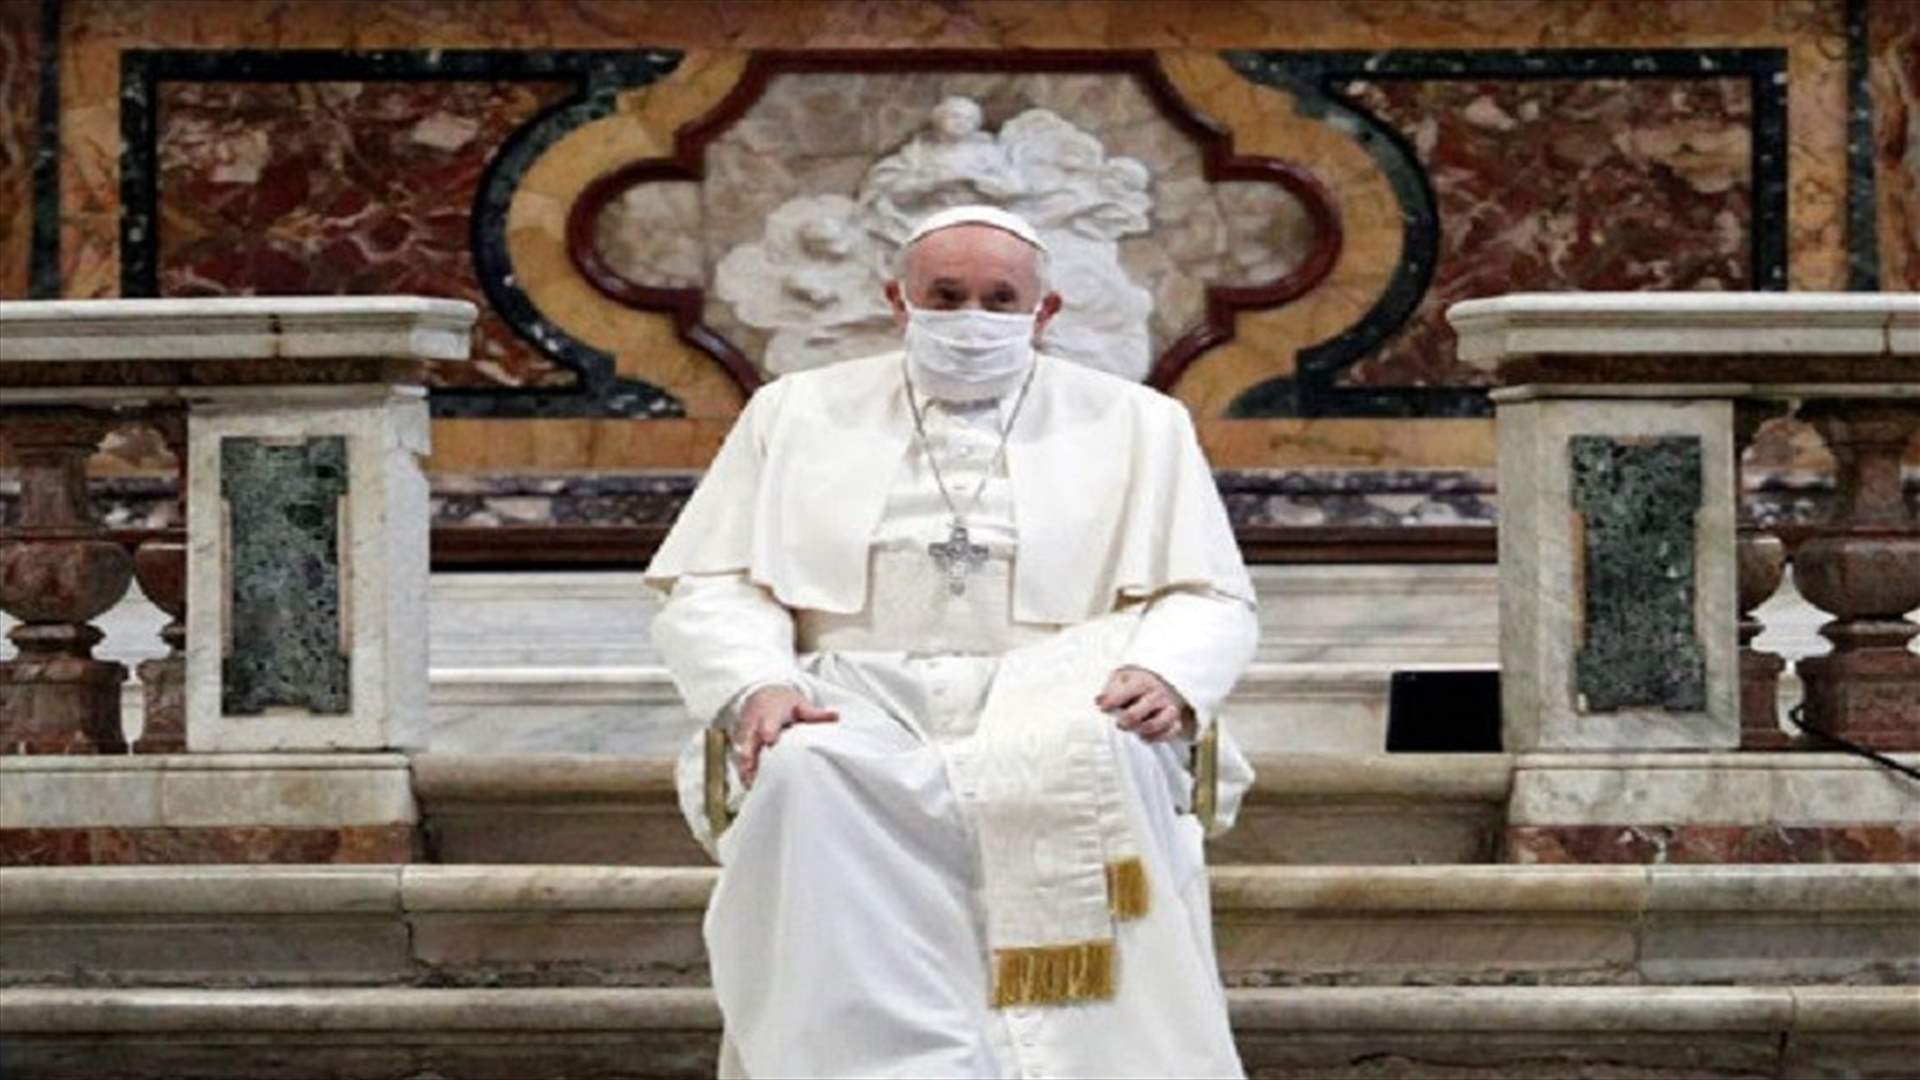 البابا فرنسيس يضع كمامة لأول مرة خلال حضوره مناسبة عامة